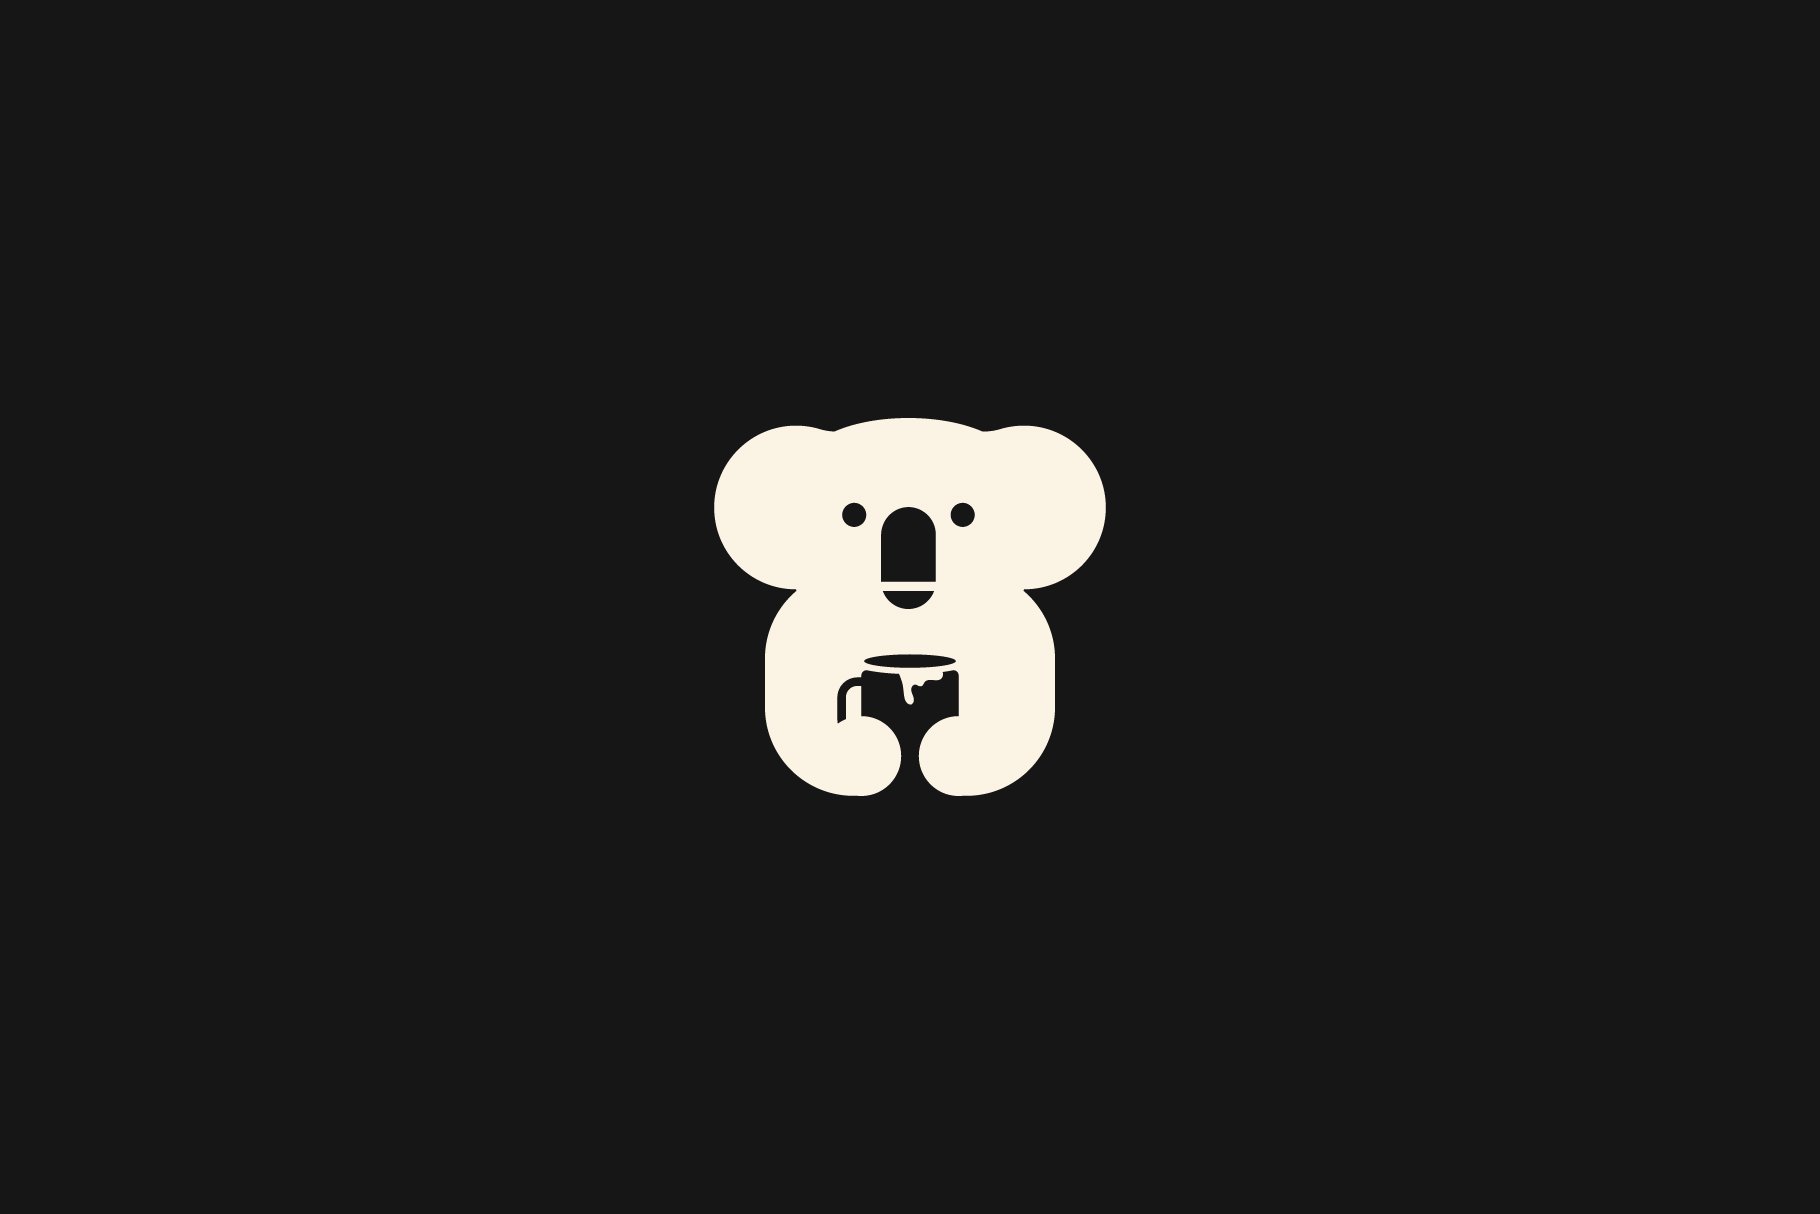 Koala drink a cup logo vector icon preview image.